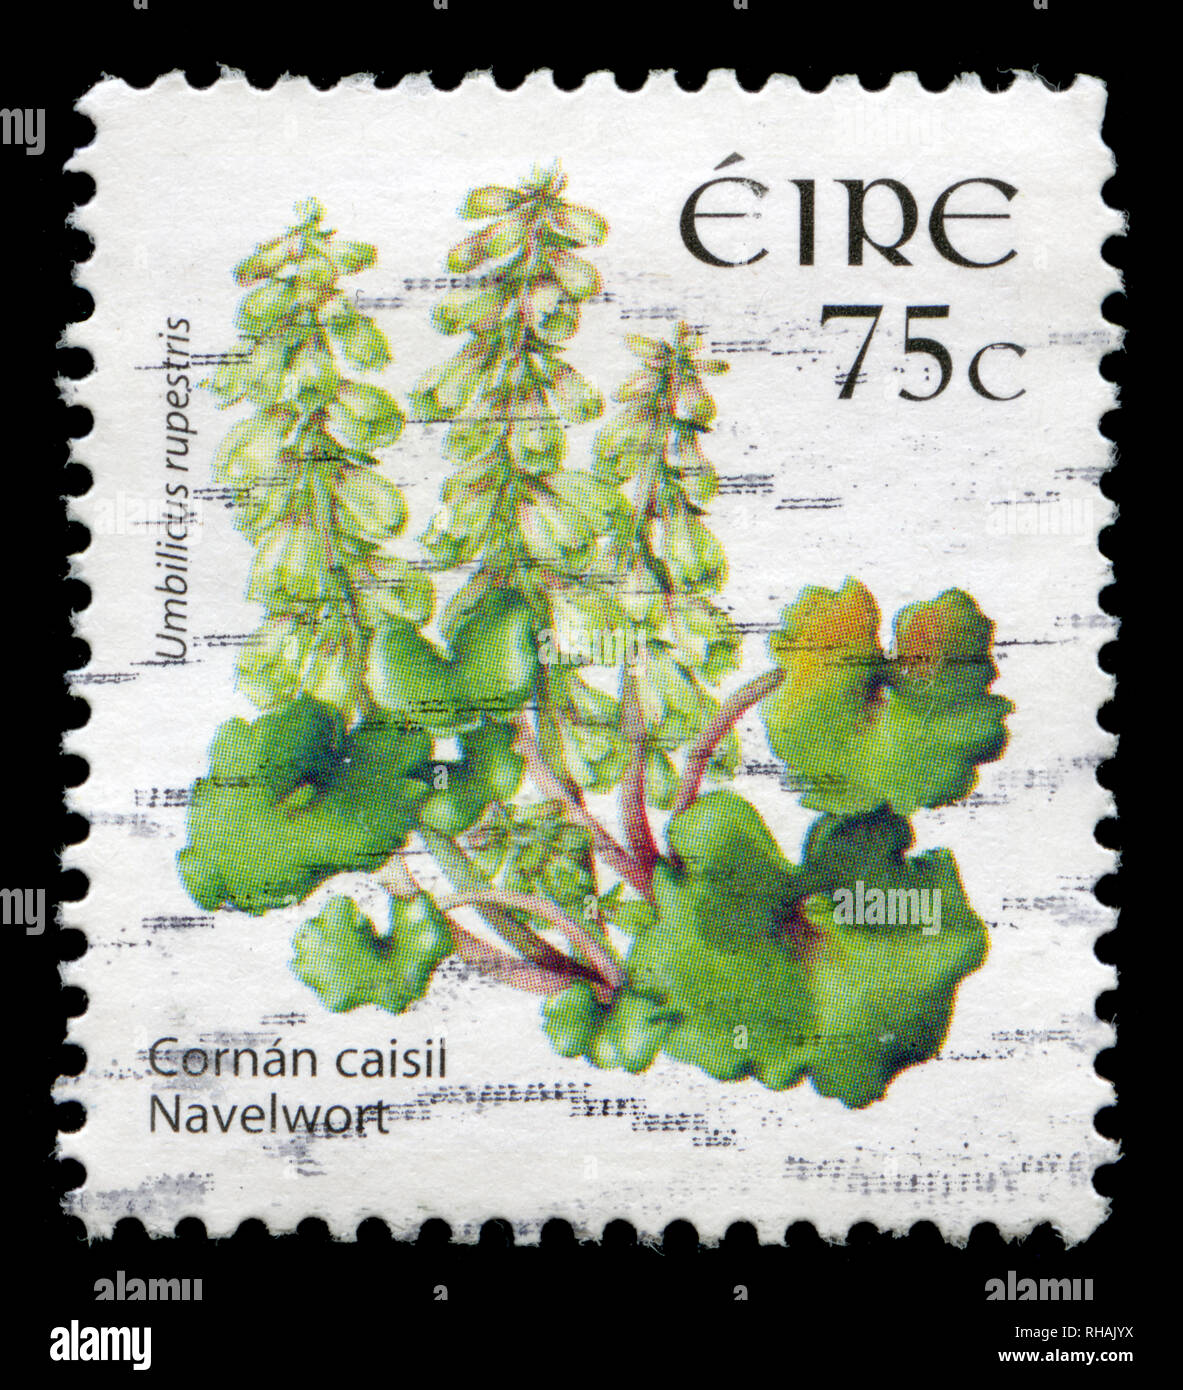 Briefmarke aus Irland in die wilden Blumen Dauerserien 2004-2011 Serie in 2006. Stockfoto